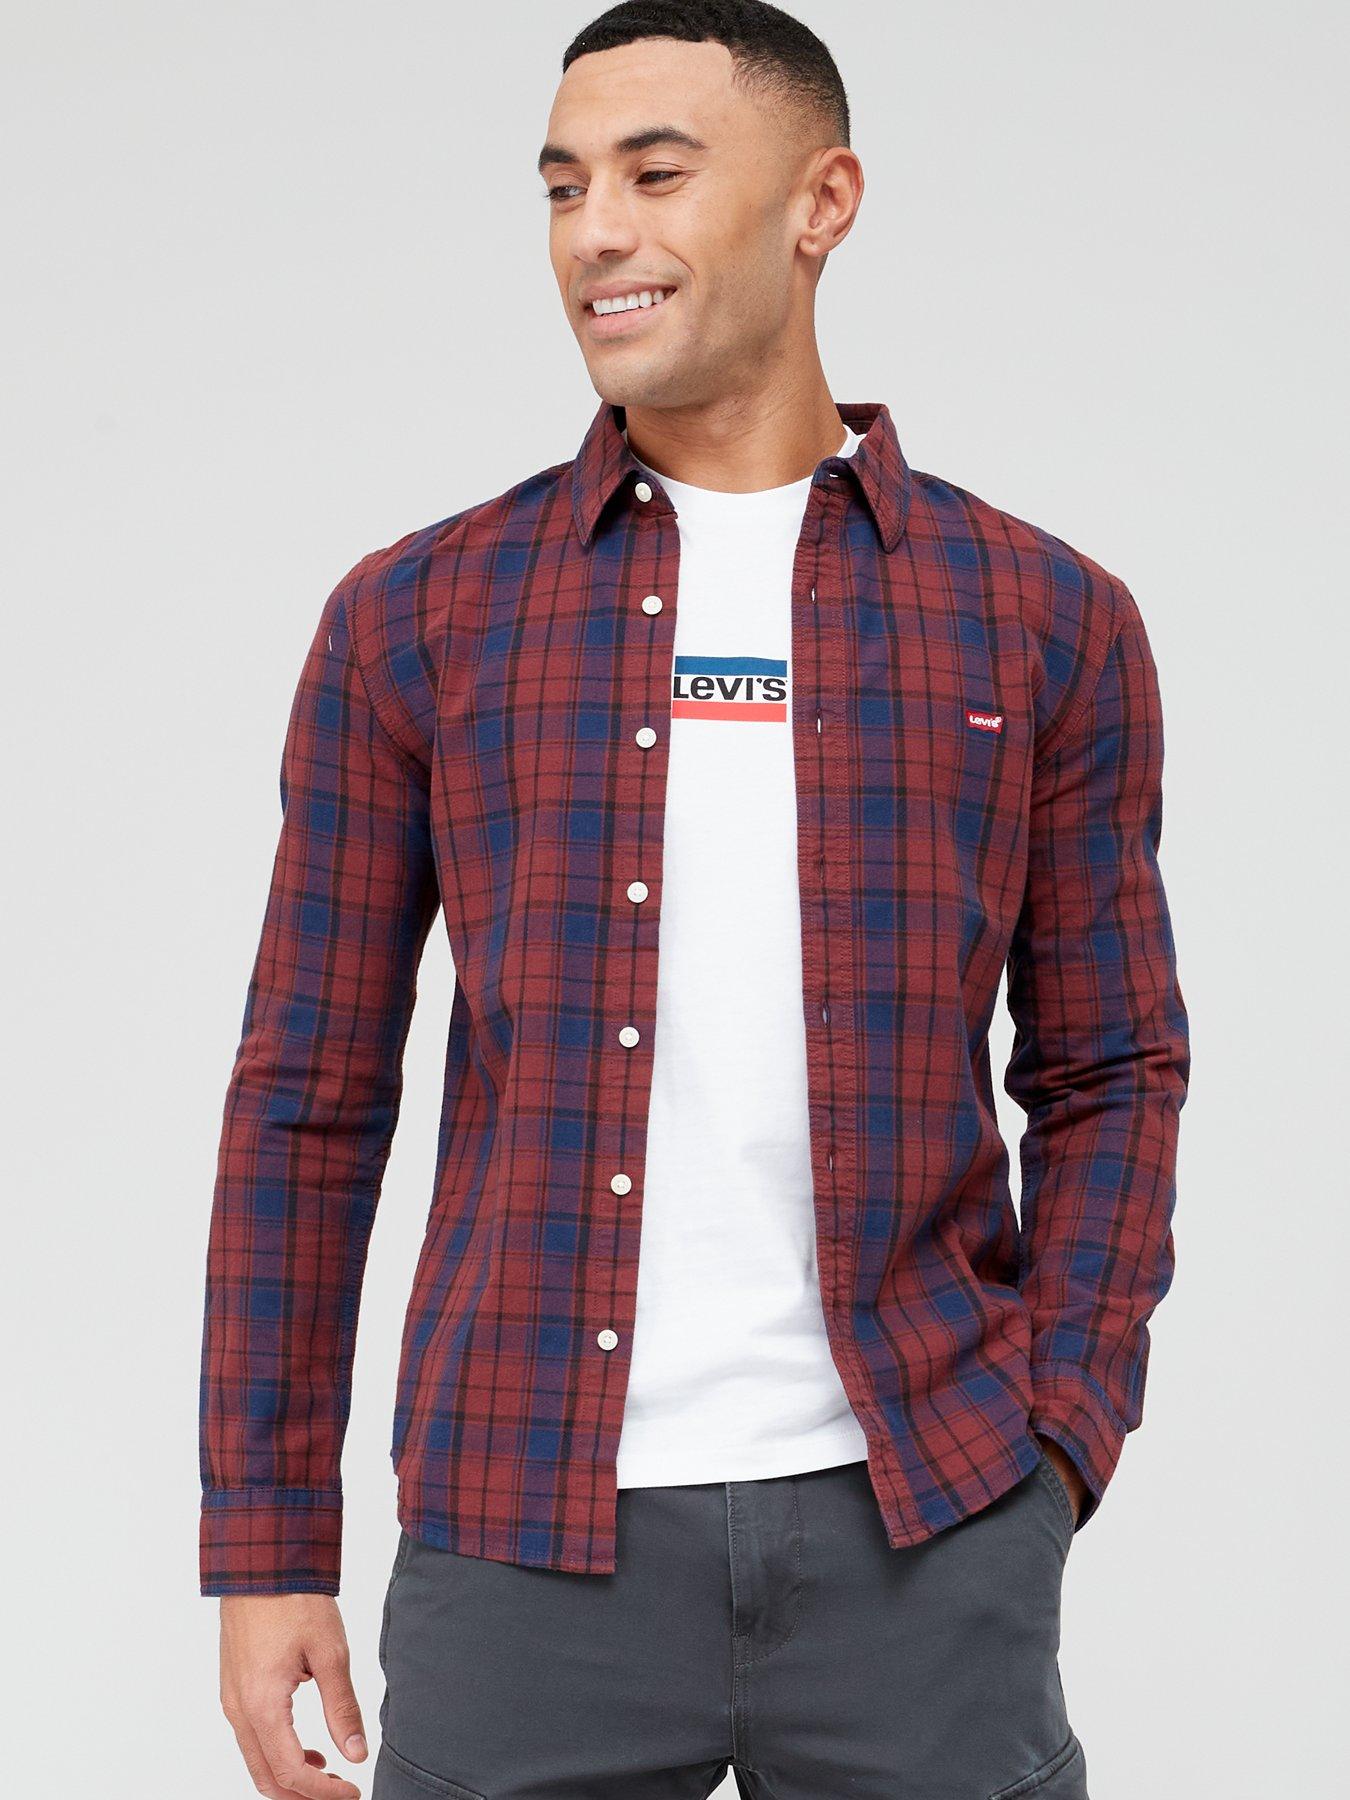 Levi's Battery Housemark Logo Long Sleeve Shirt - Multi 